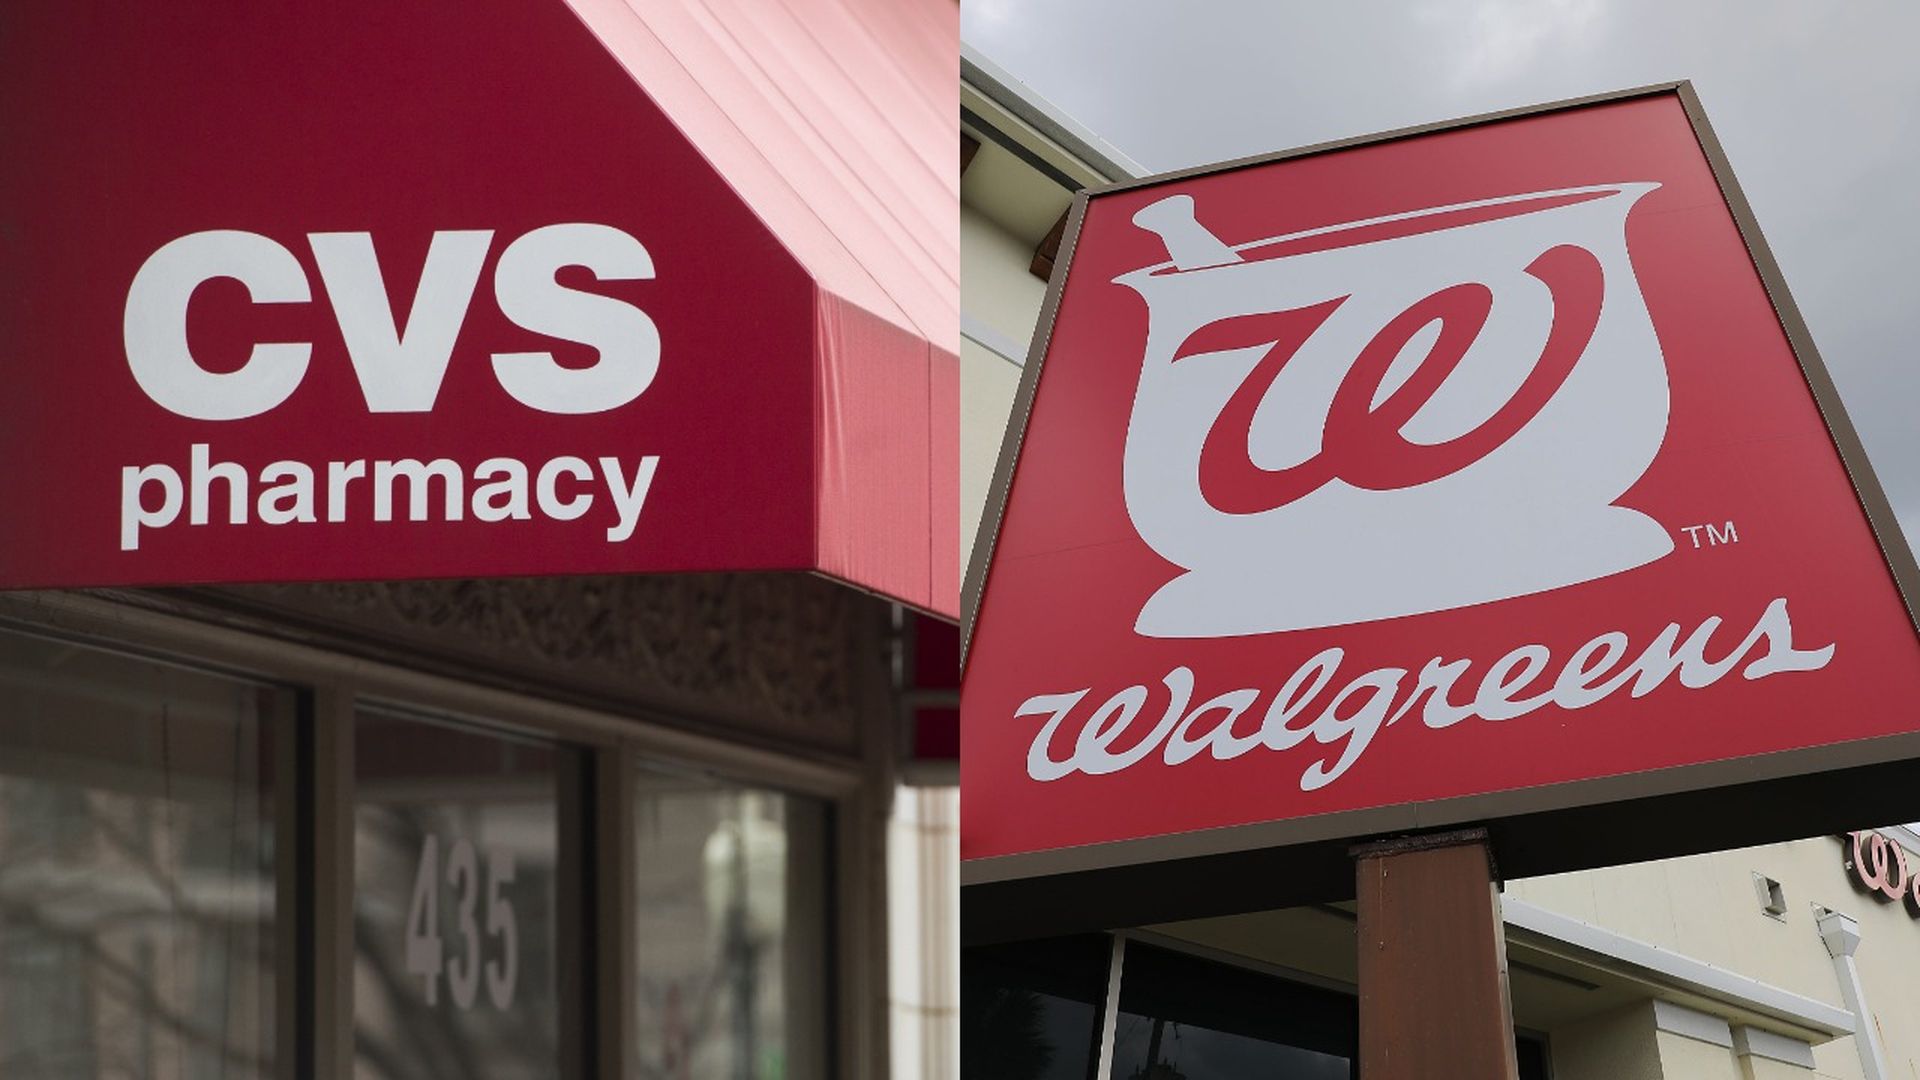 The Walgreens and CVS logos.